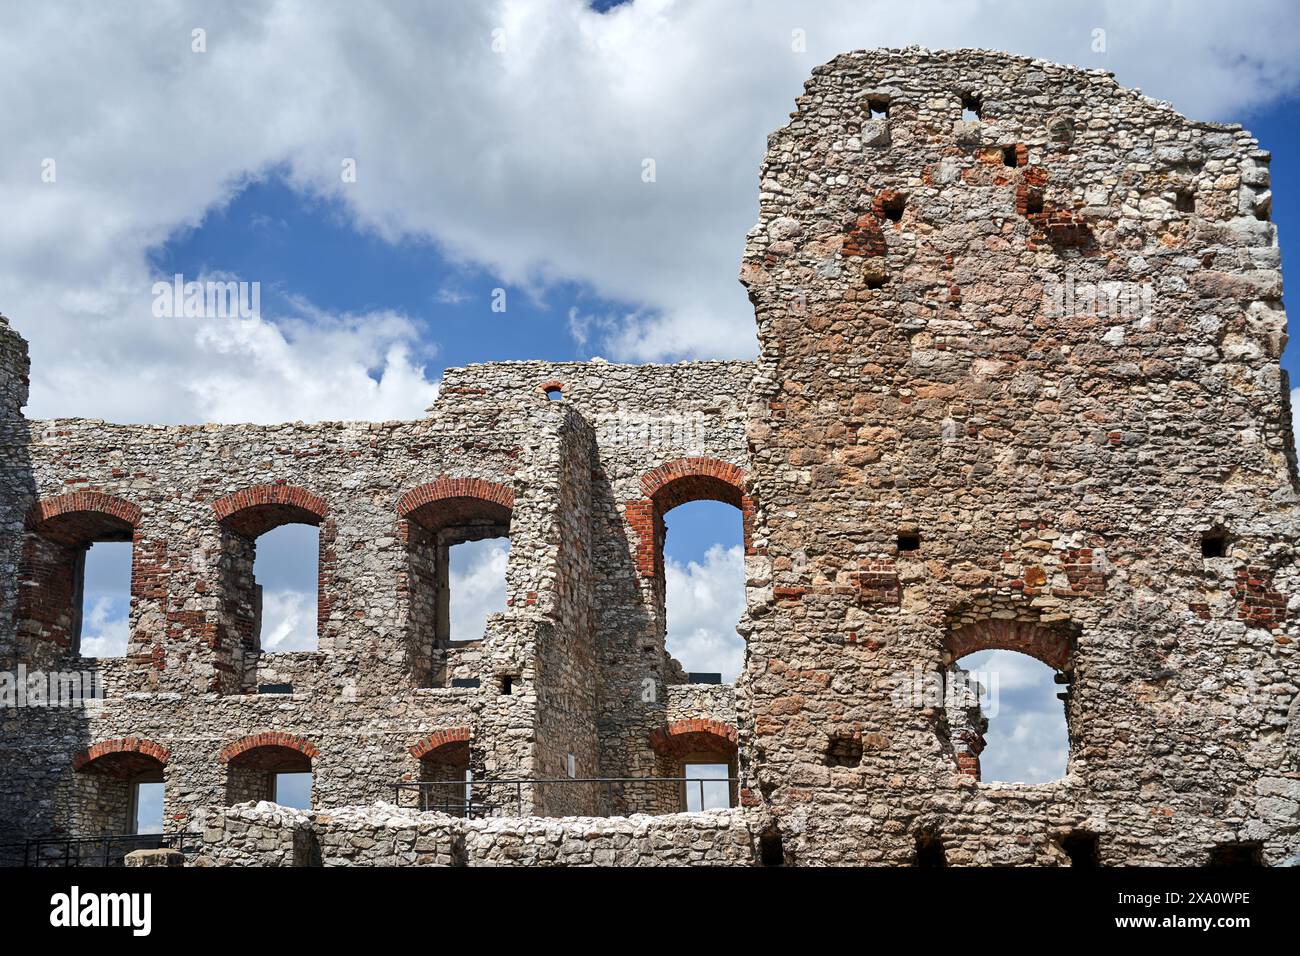 Fragment des ruines d'un château médiéval à Ogrodzieniec, Pologne Banque D'Images